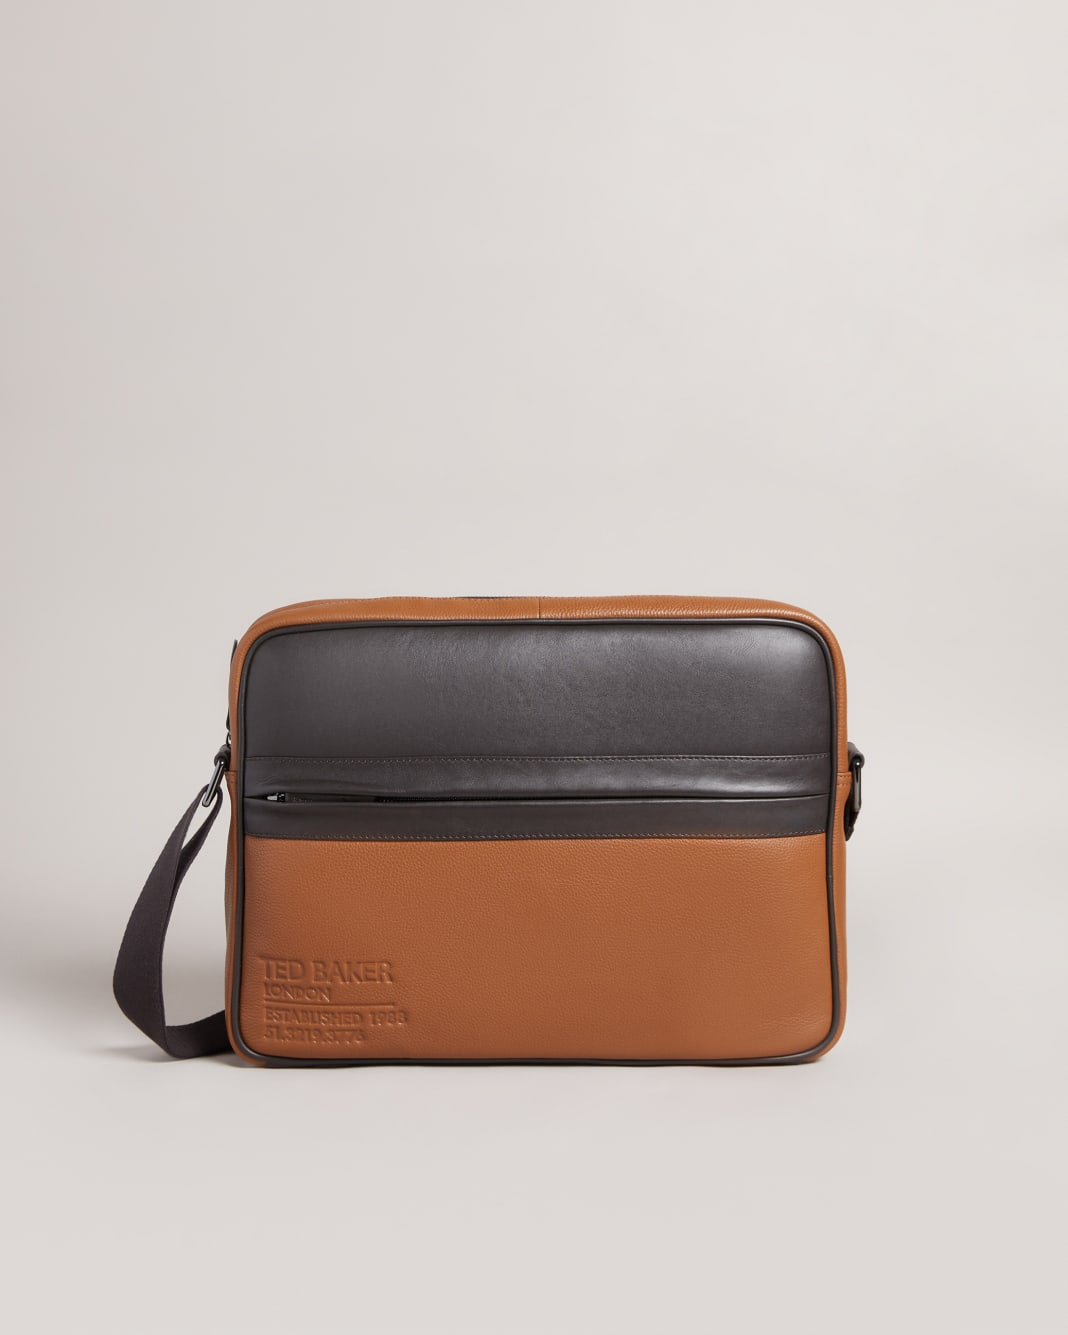 테드 베이커 Ted Baker Branded Leather Messenger Bag,Dark Tan